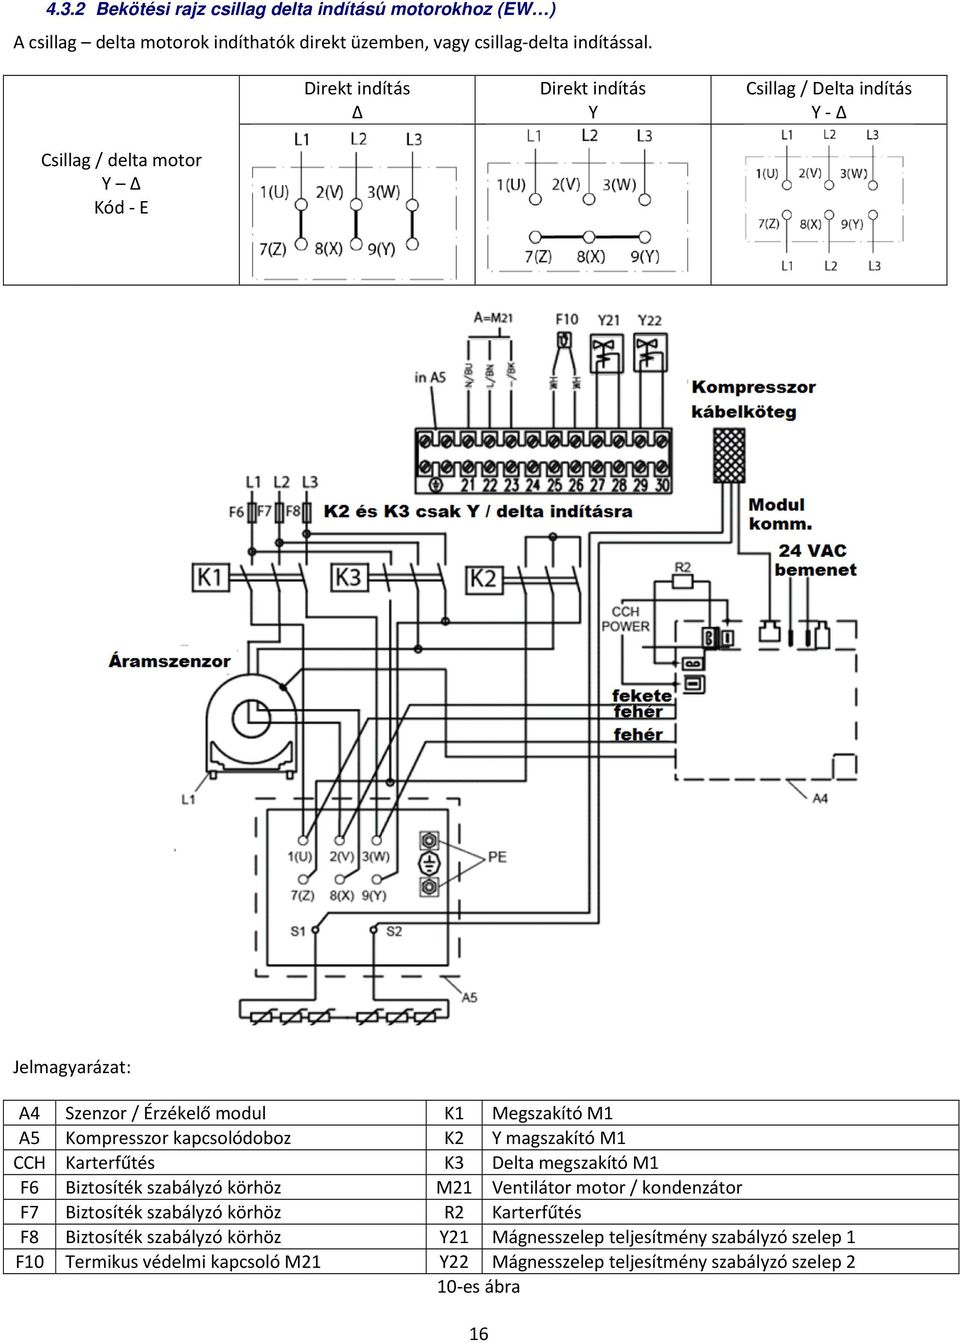 Kompresszor kapcsolódoboz K2 Y magszakító M1 CCH Karterfűtés K3 Delta megszakító M1 F6 Biztosíték szabályzó körhöz M21 Ventilátor motor / kondenzátor F7 Biztosíték